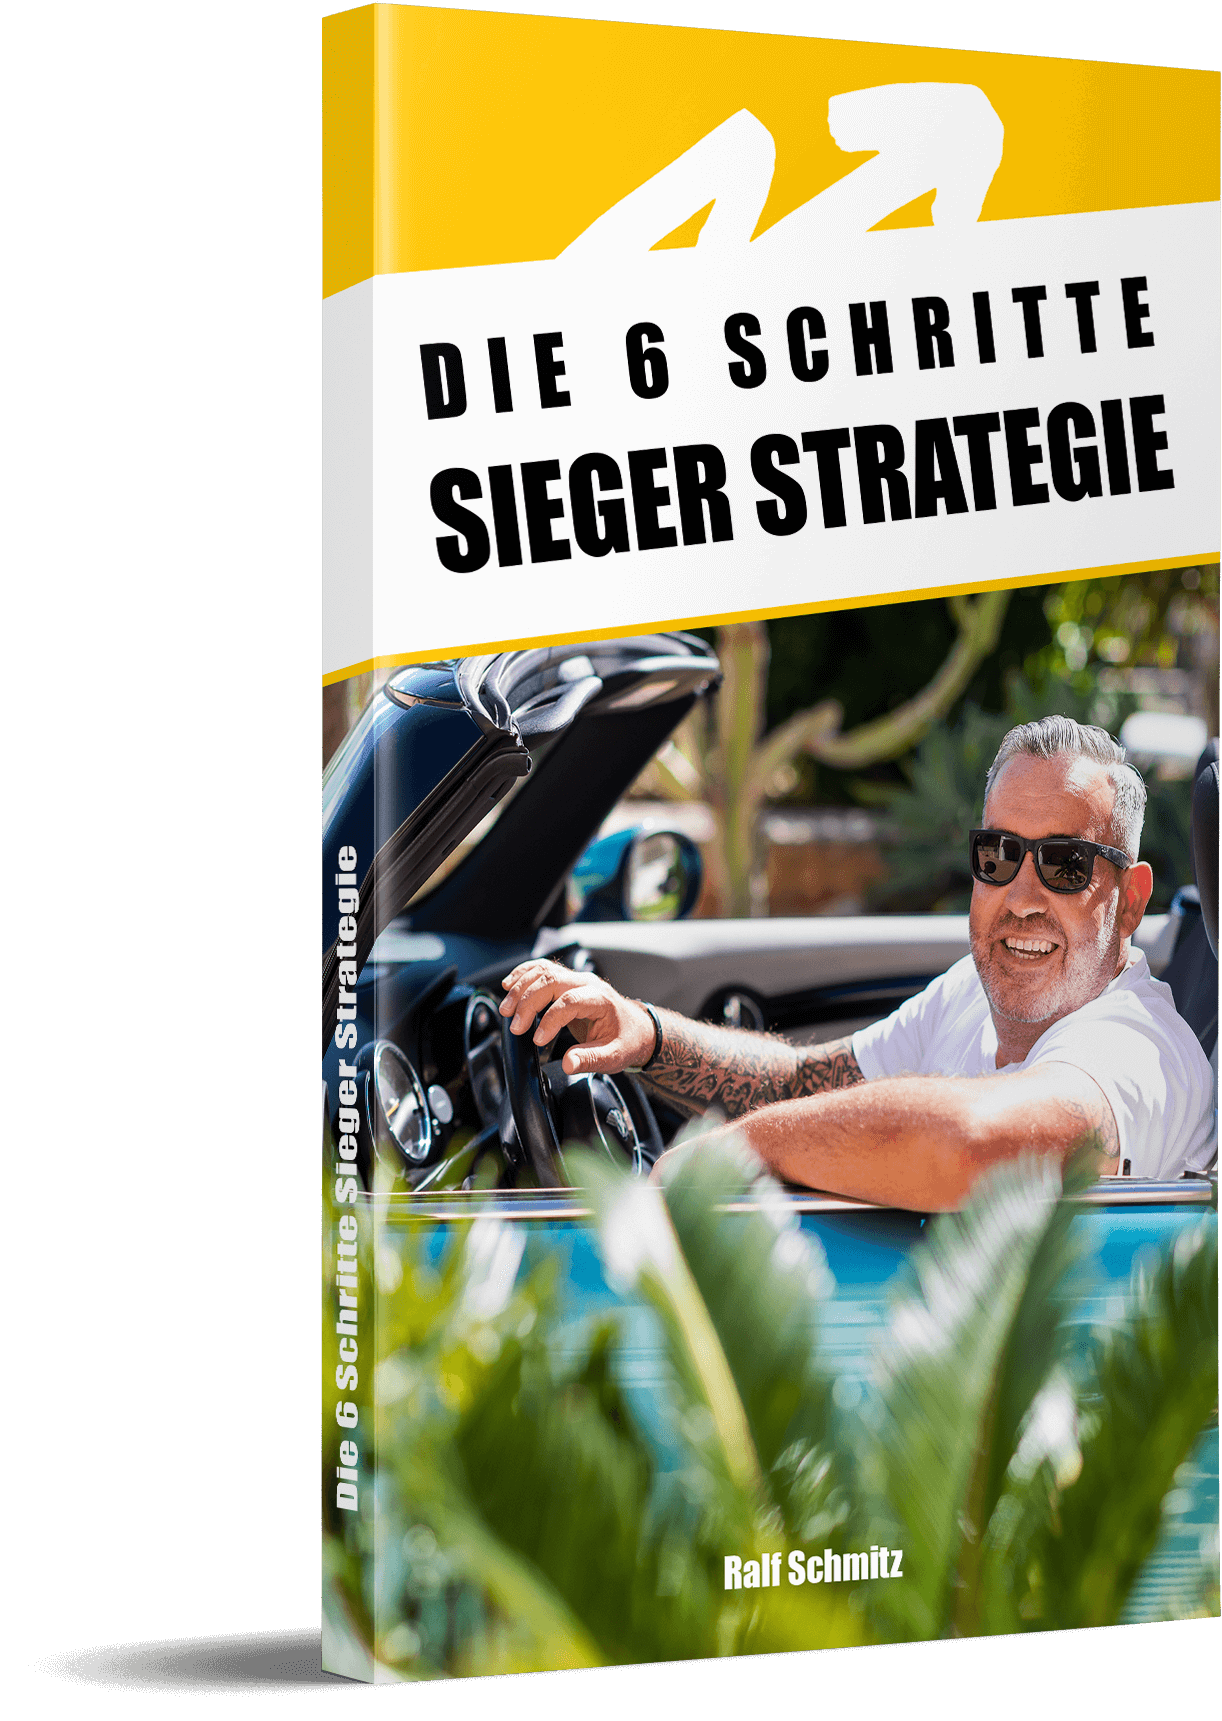 6 Schritte Sieger Strategie – by Ralf Schmitz